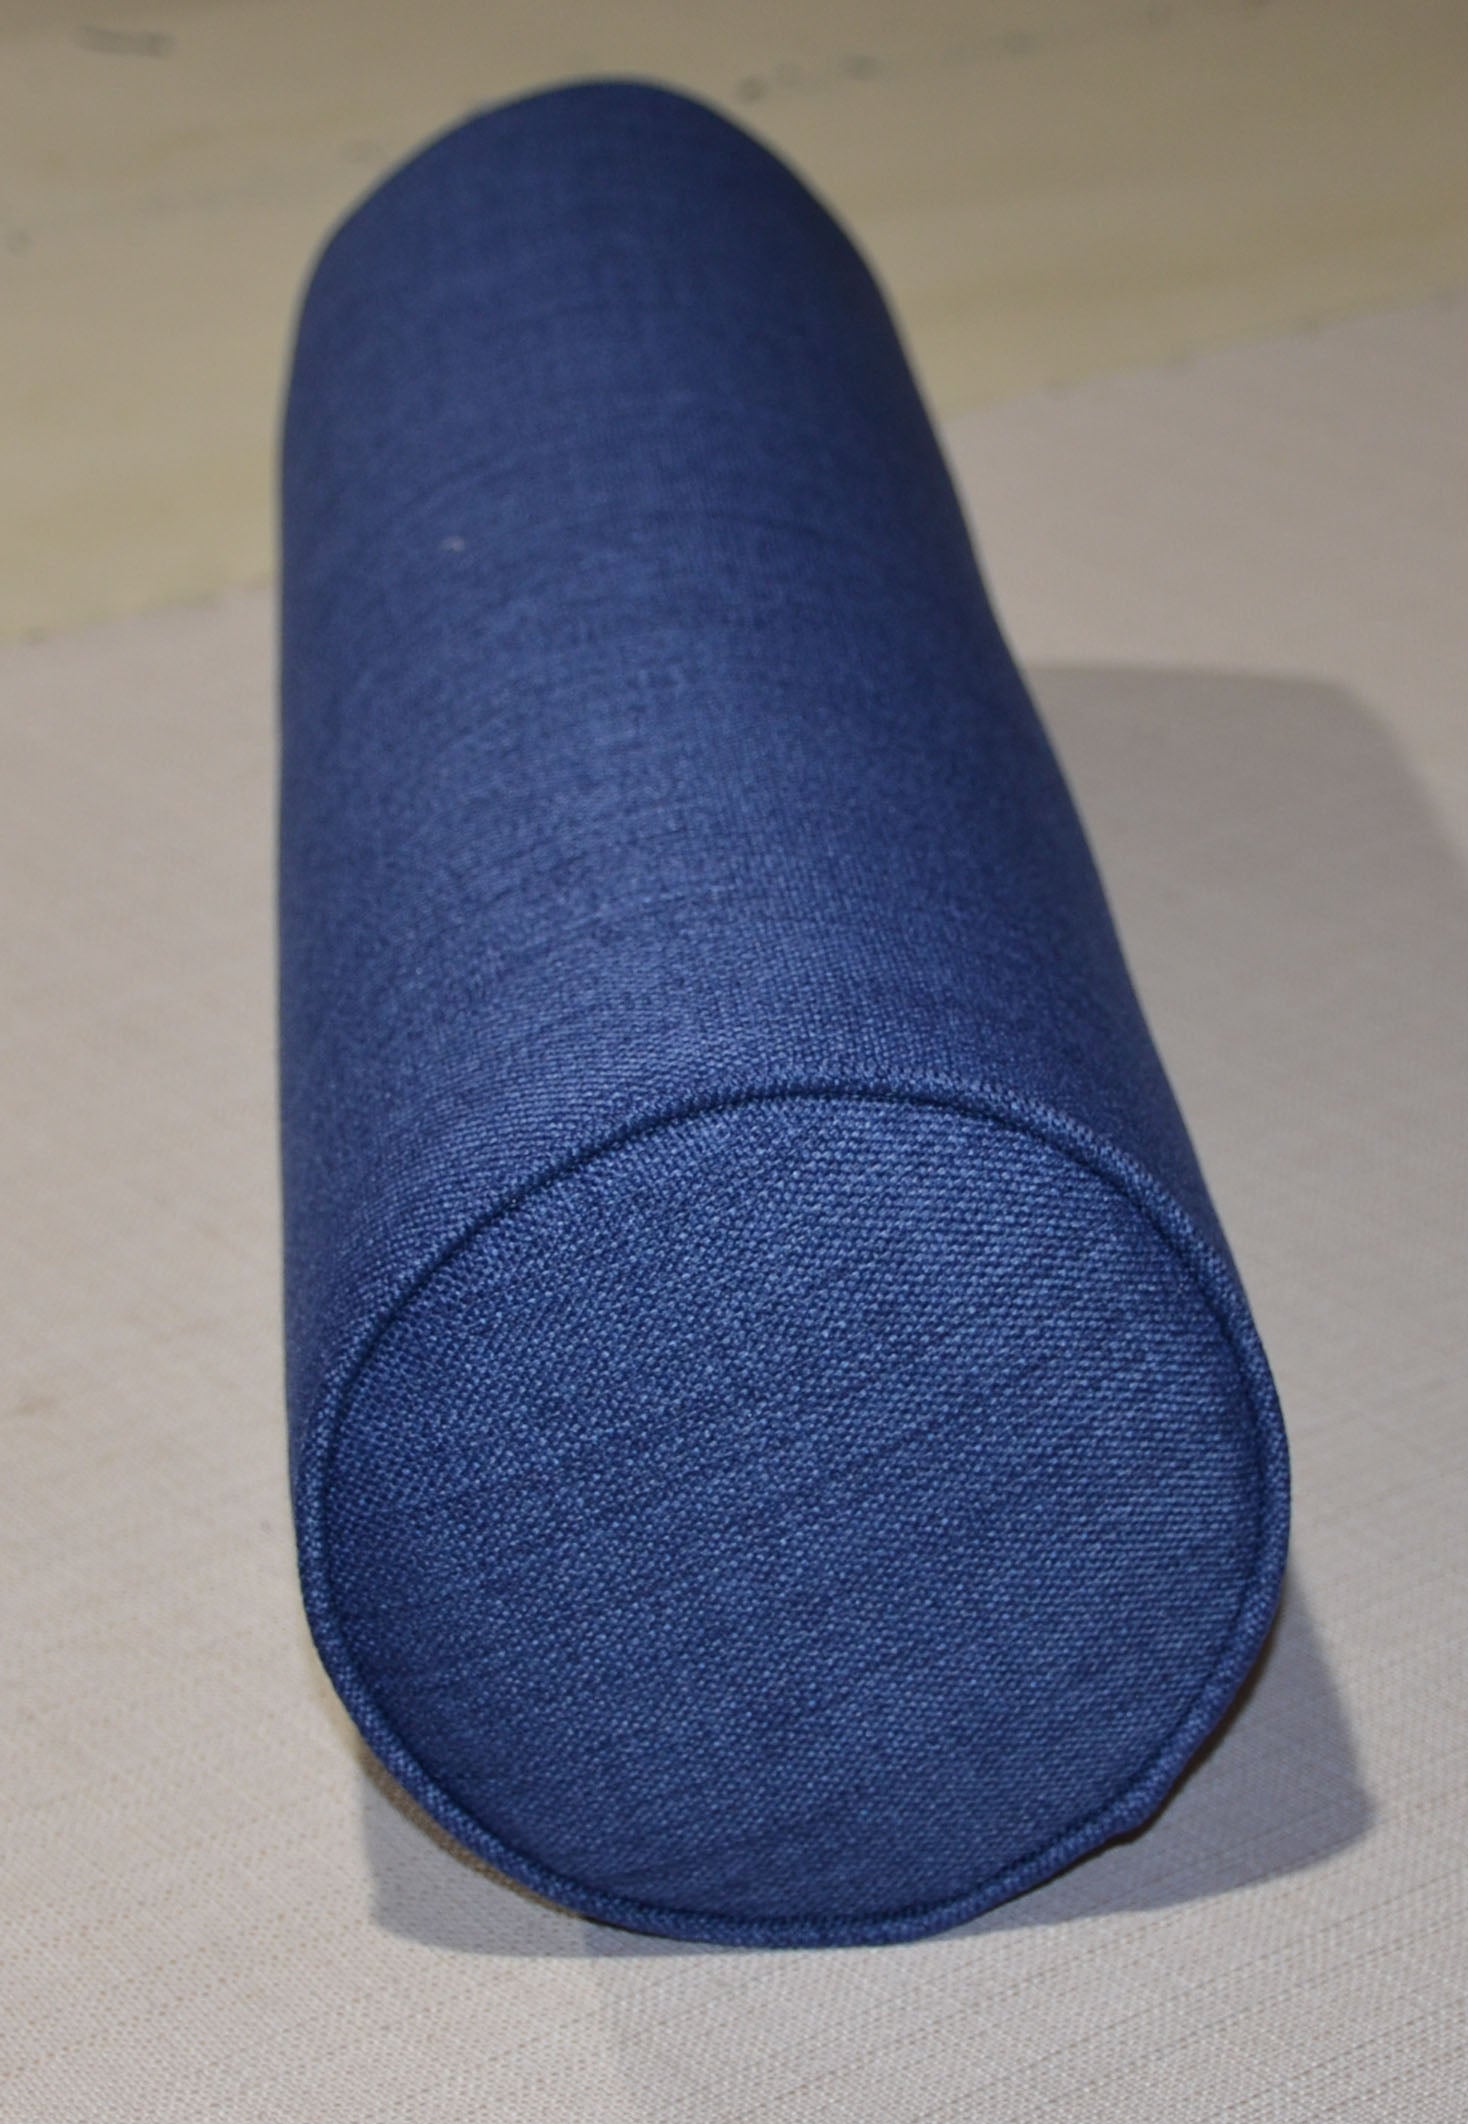 Round Bolster Pillow Cover . Lepap Navy Blue.